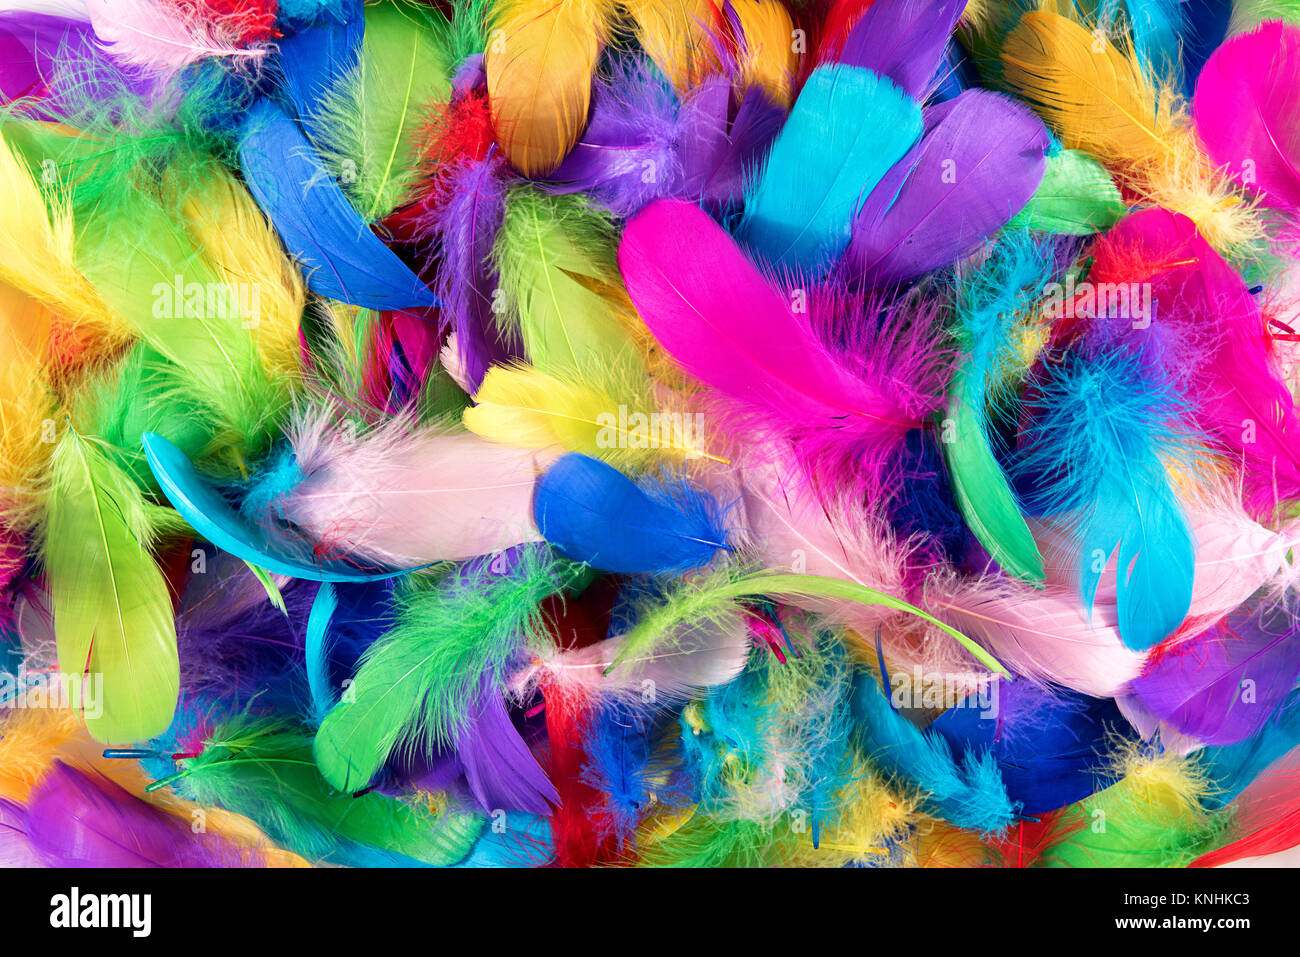 Sip meteorito Monje Textura de fondo de colores brillantes plumas de aves teñidas con los  colores del arco iris o espectro en un montón aleatorio vistos desde arriba  en un fotograma completo Fotografía de stock -